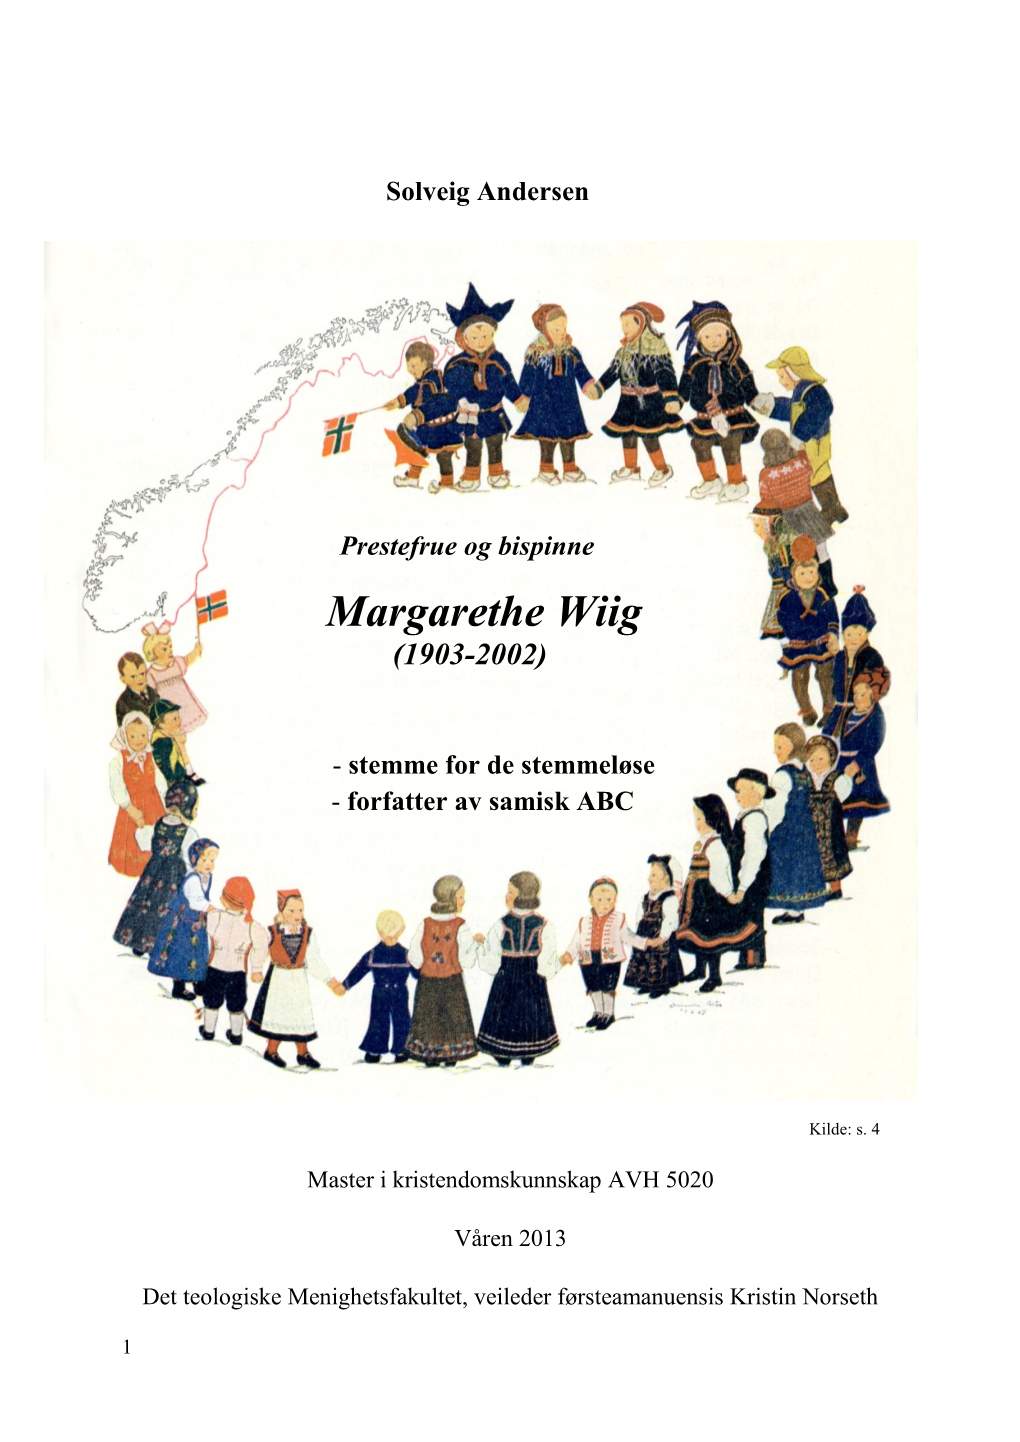 Margarethe Wiig (1903-2002)